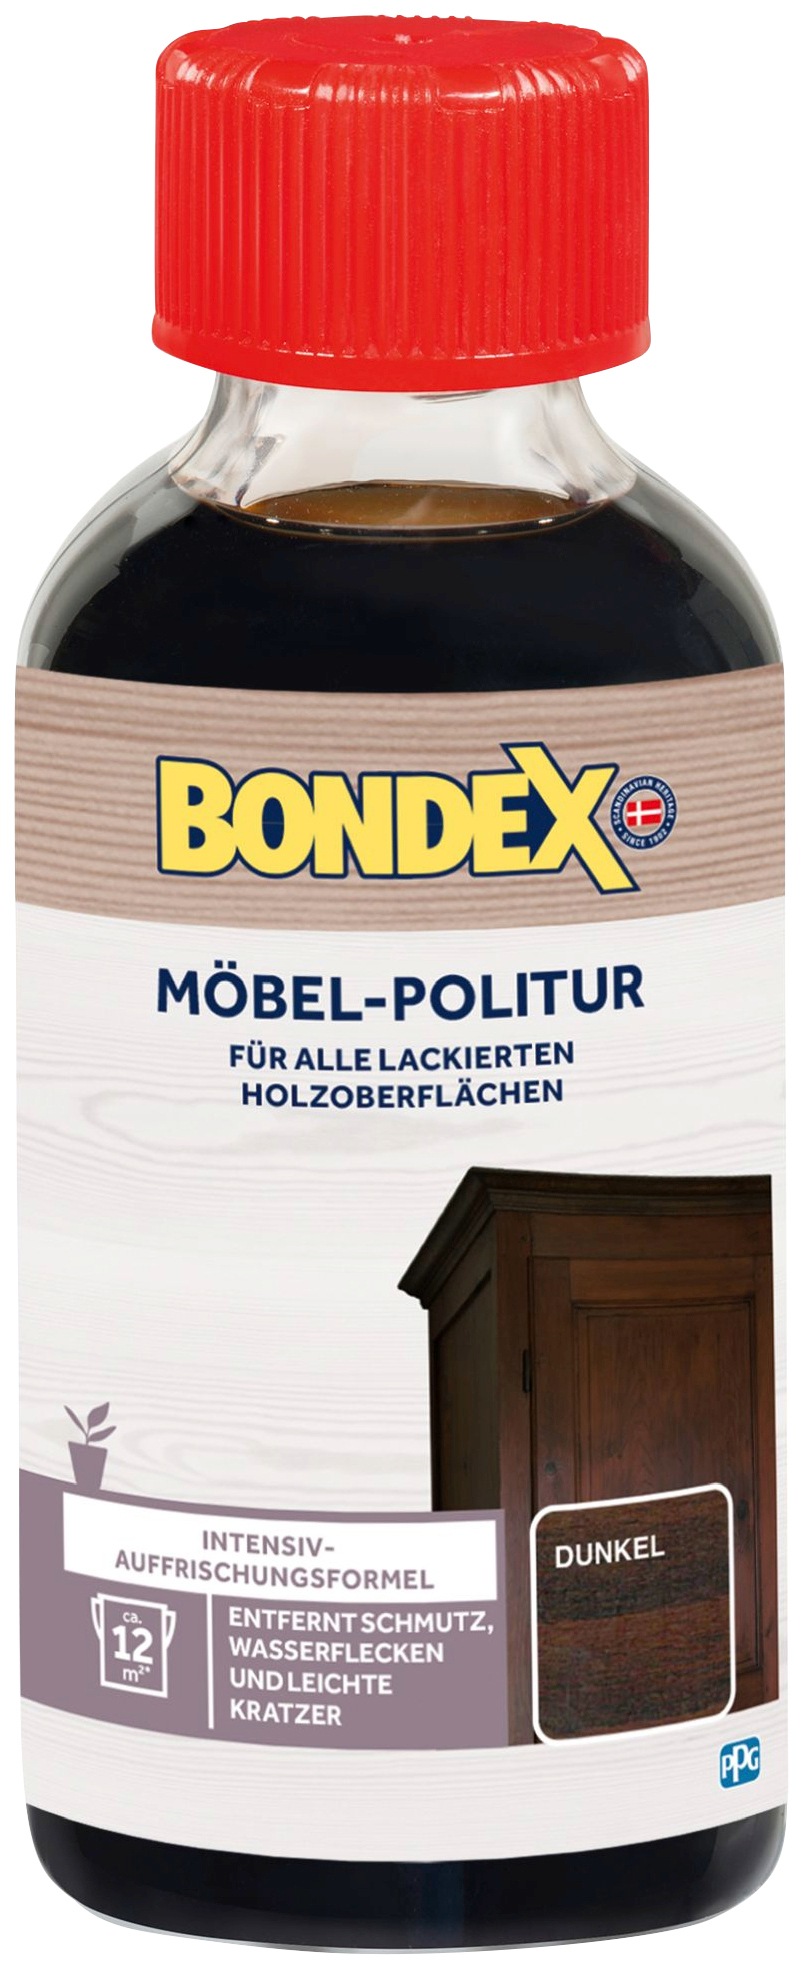 Bondex Holzpflegeöl »MÖBEL-POLITUR Dunkel« 01...